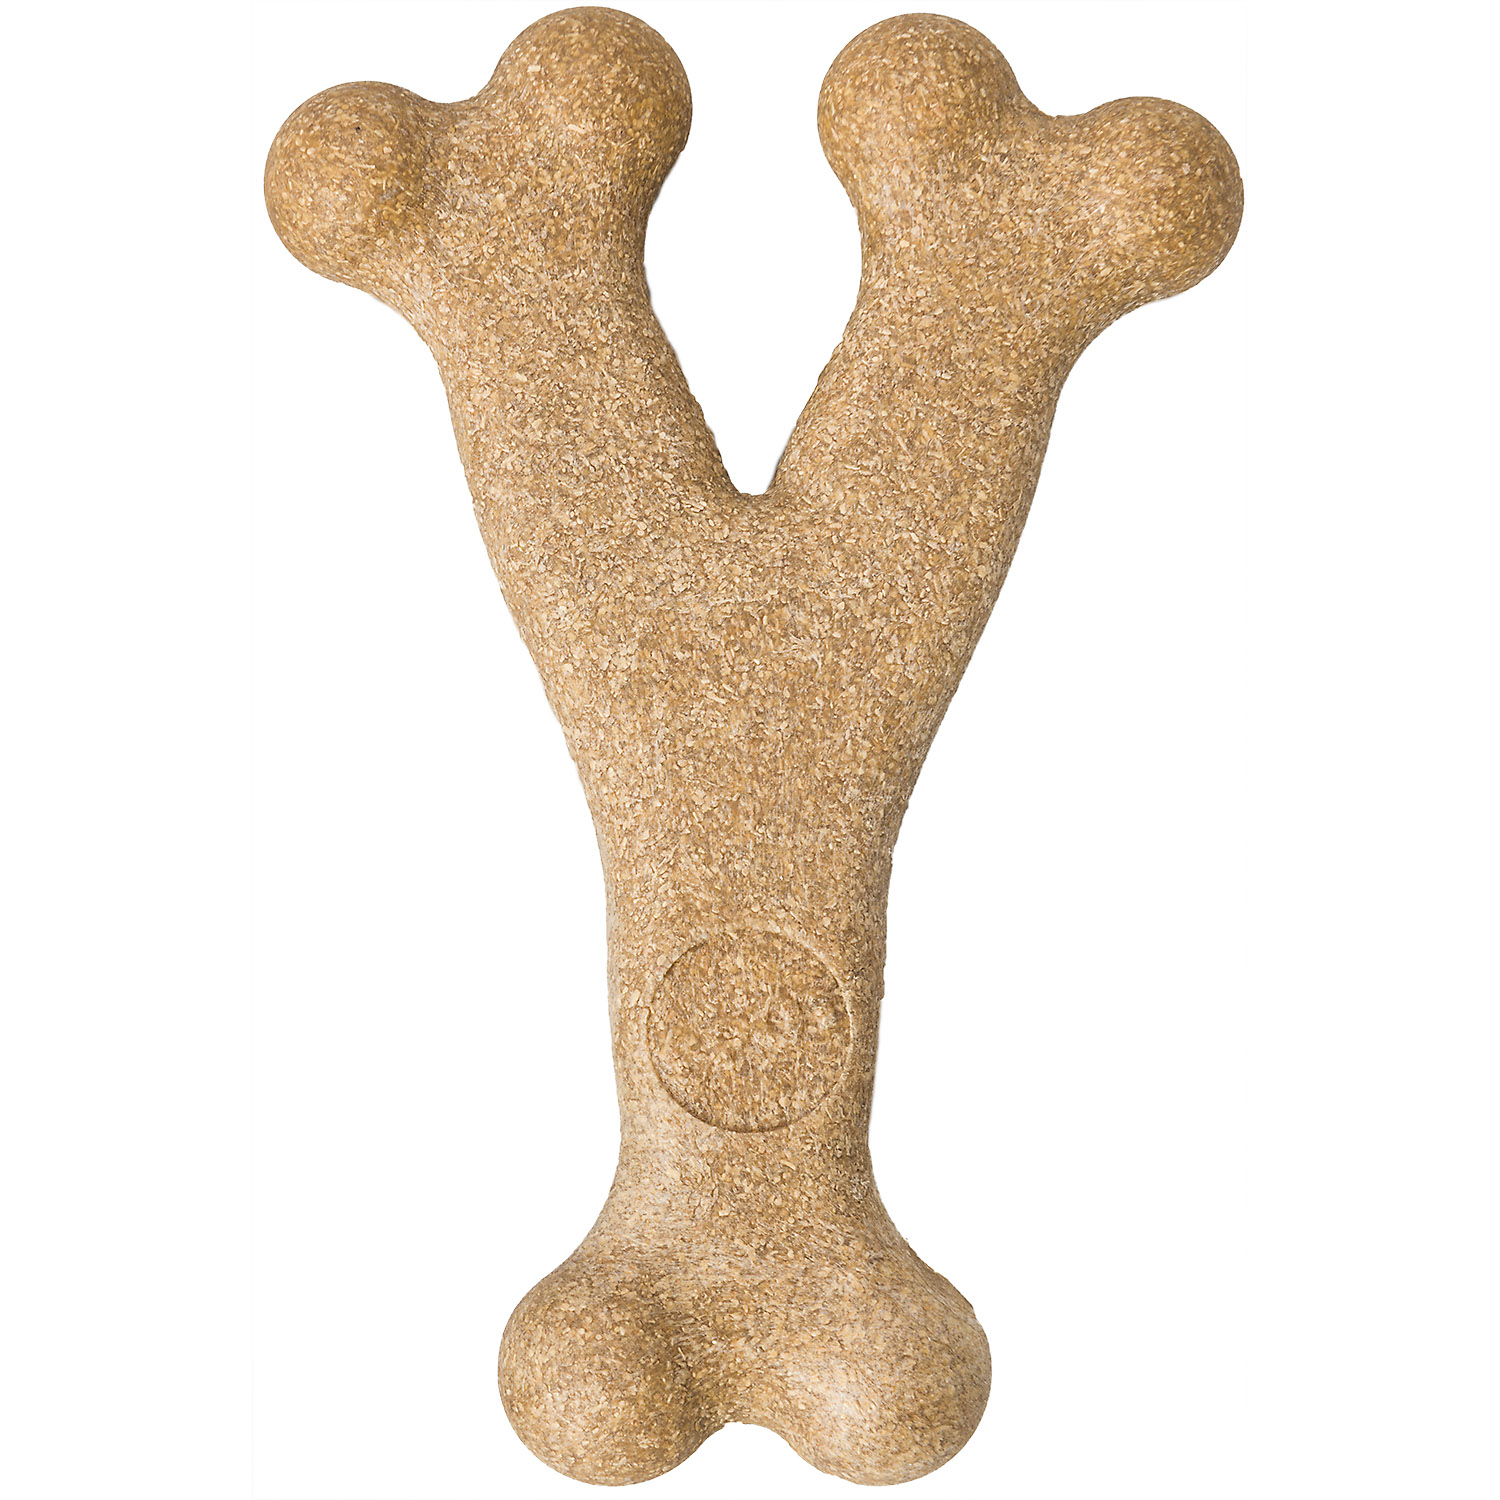 ETHICAL SPOT Bam Bone Bone for Dog Treat Chicken long lasting chew 5.75" 